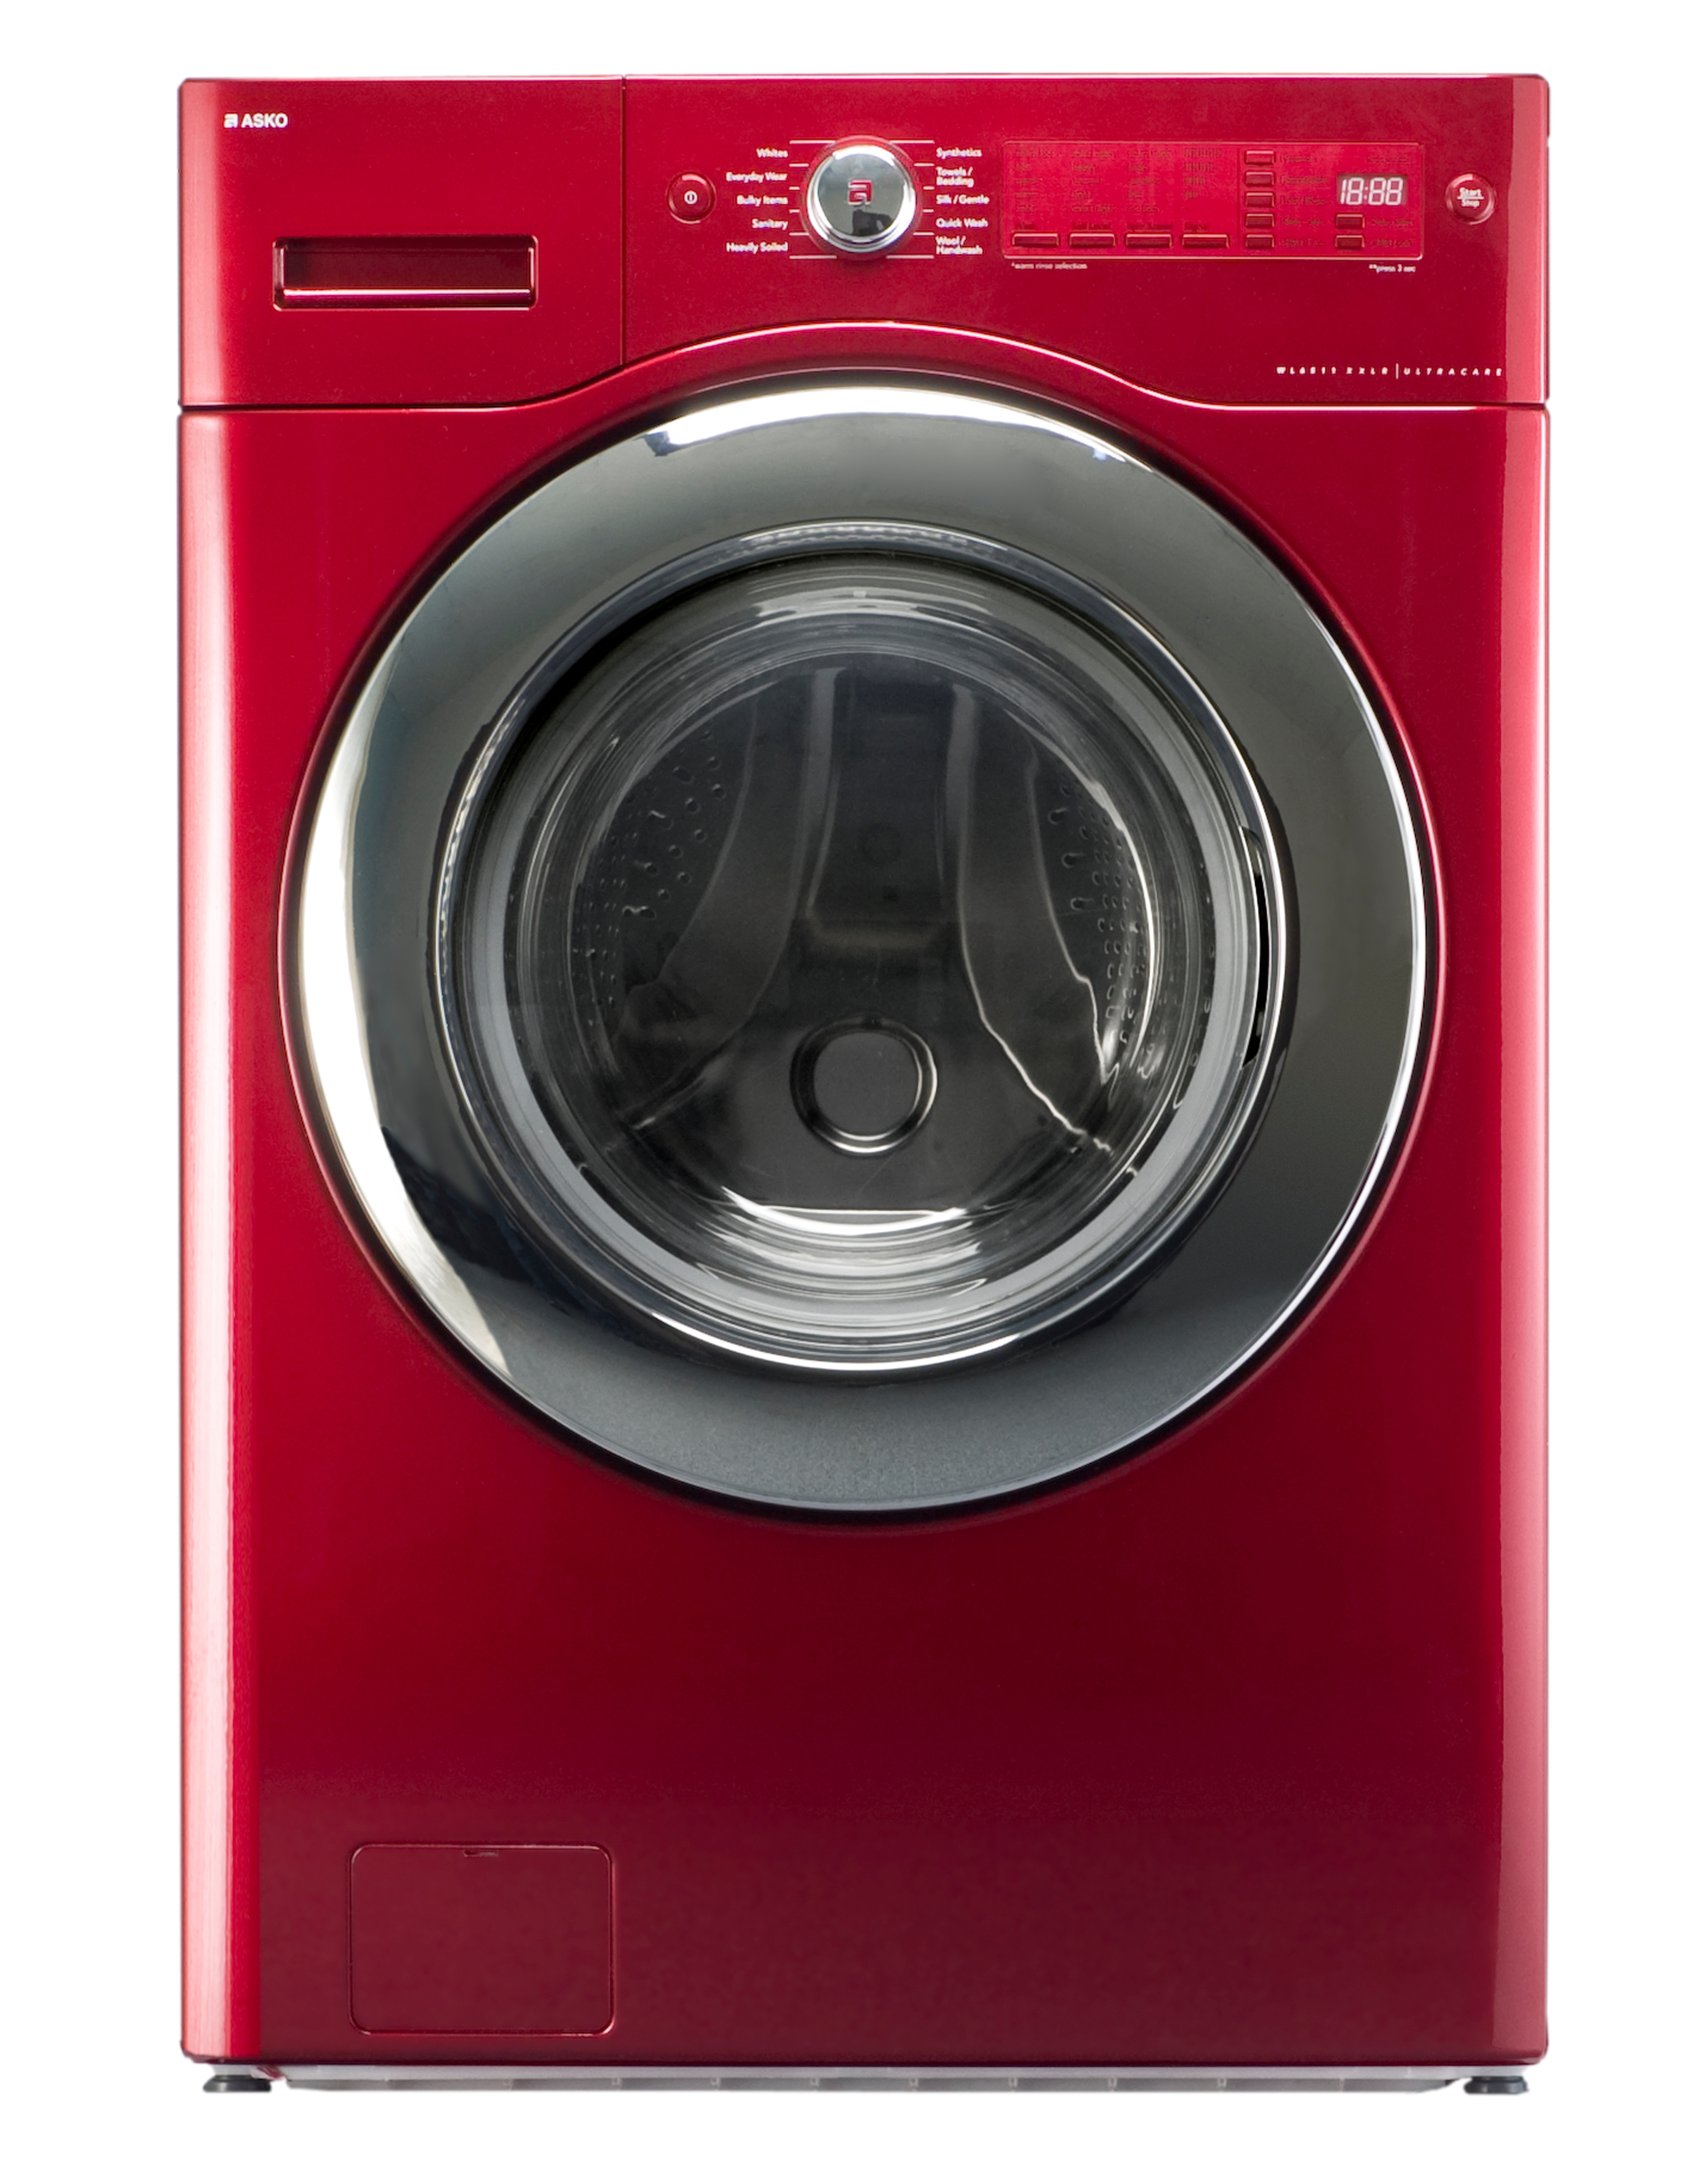 Купить будет стиральную машину. Asko wl6532. LG стиральная машинка красная dlgx3071r. Стиральная машина lg1437 Red. LG стиральная машина красная.